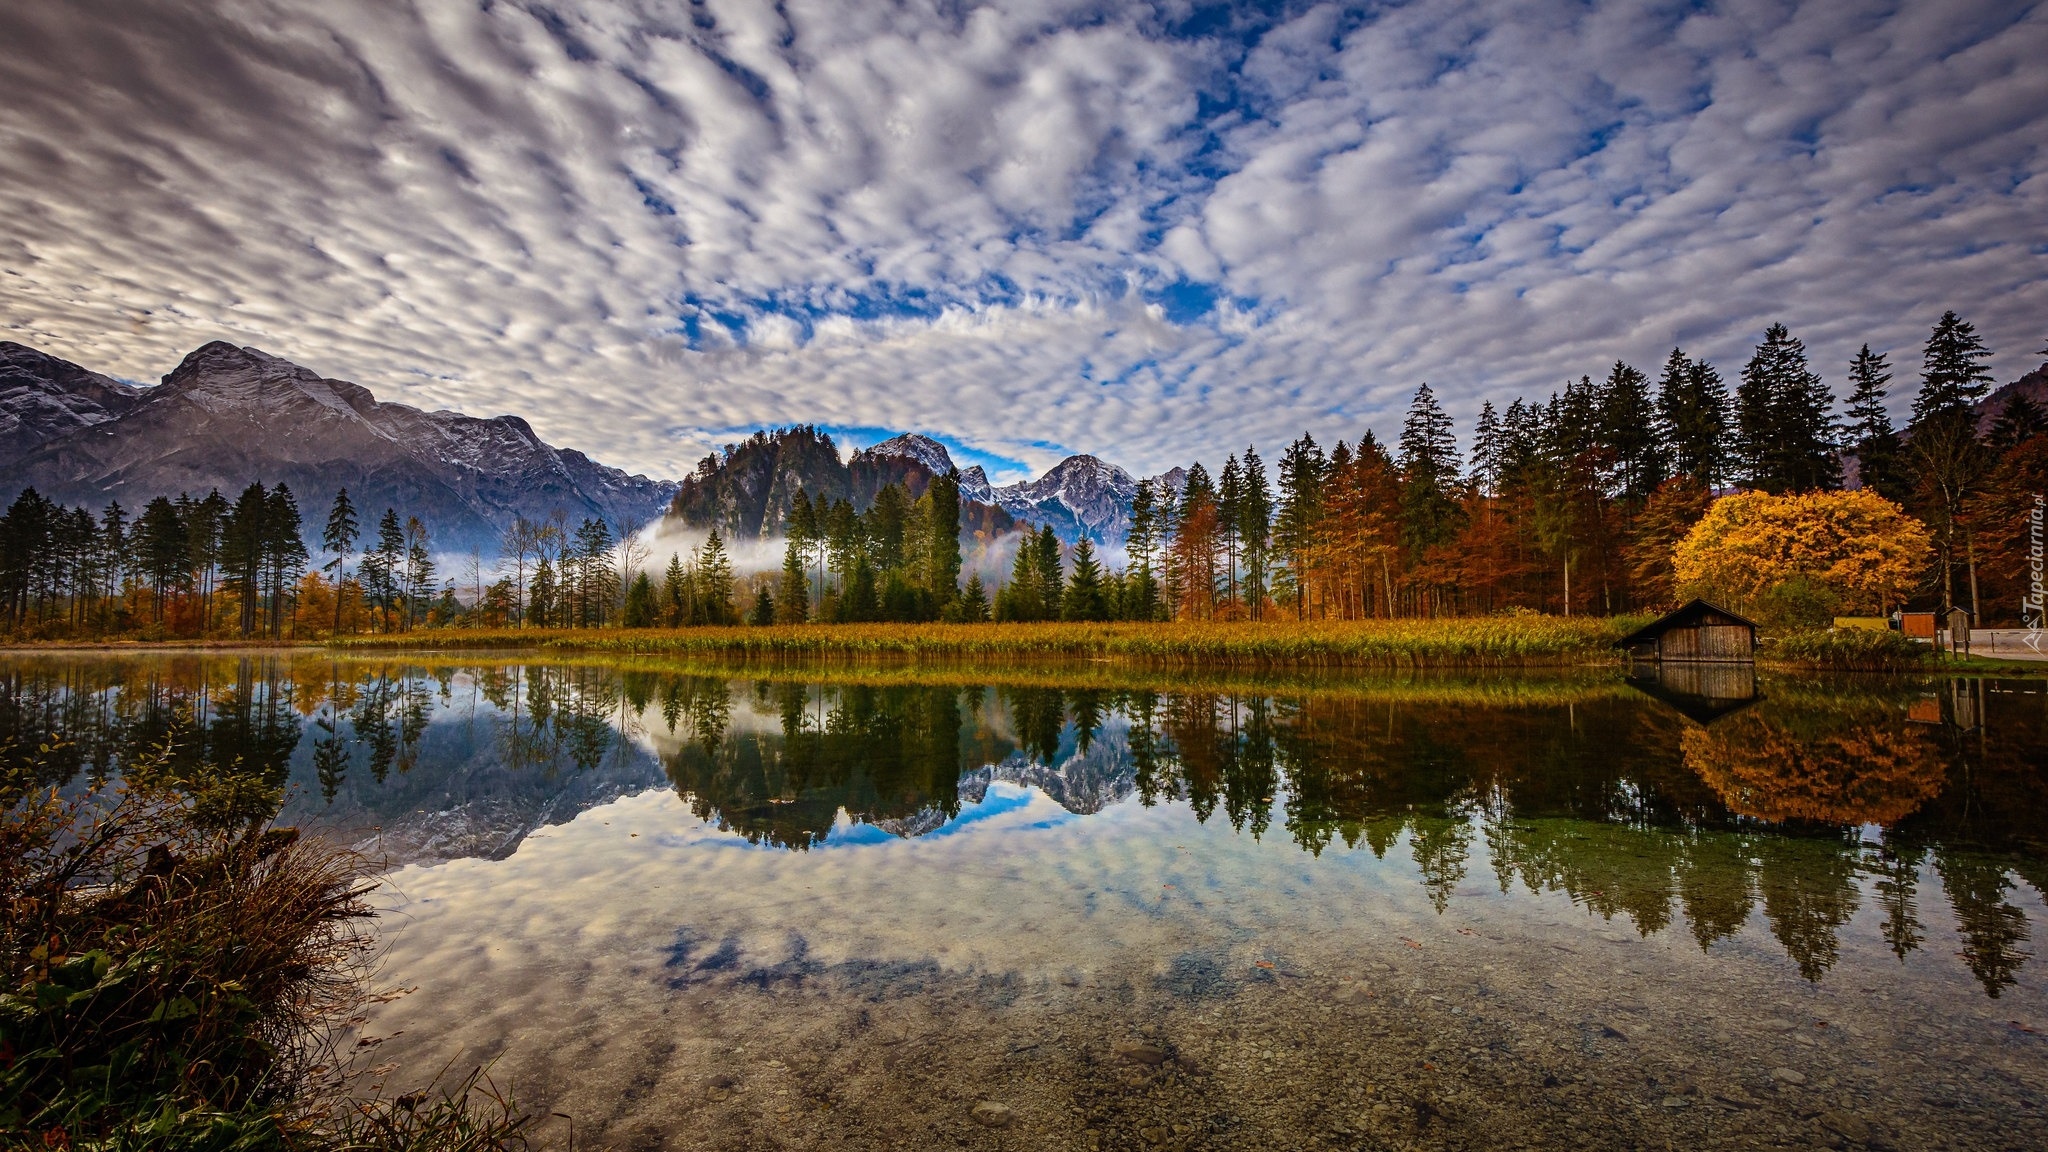 Austria, Góry, Alpy, Dolina Almtal, Jezioro Almsee, Drzewa, Chmury